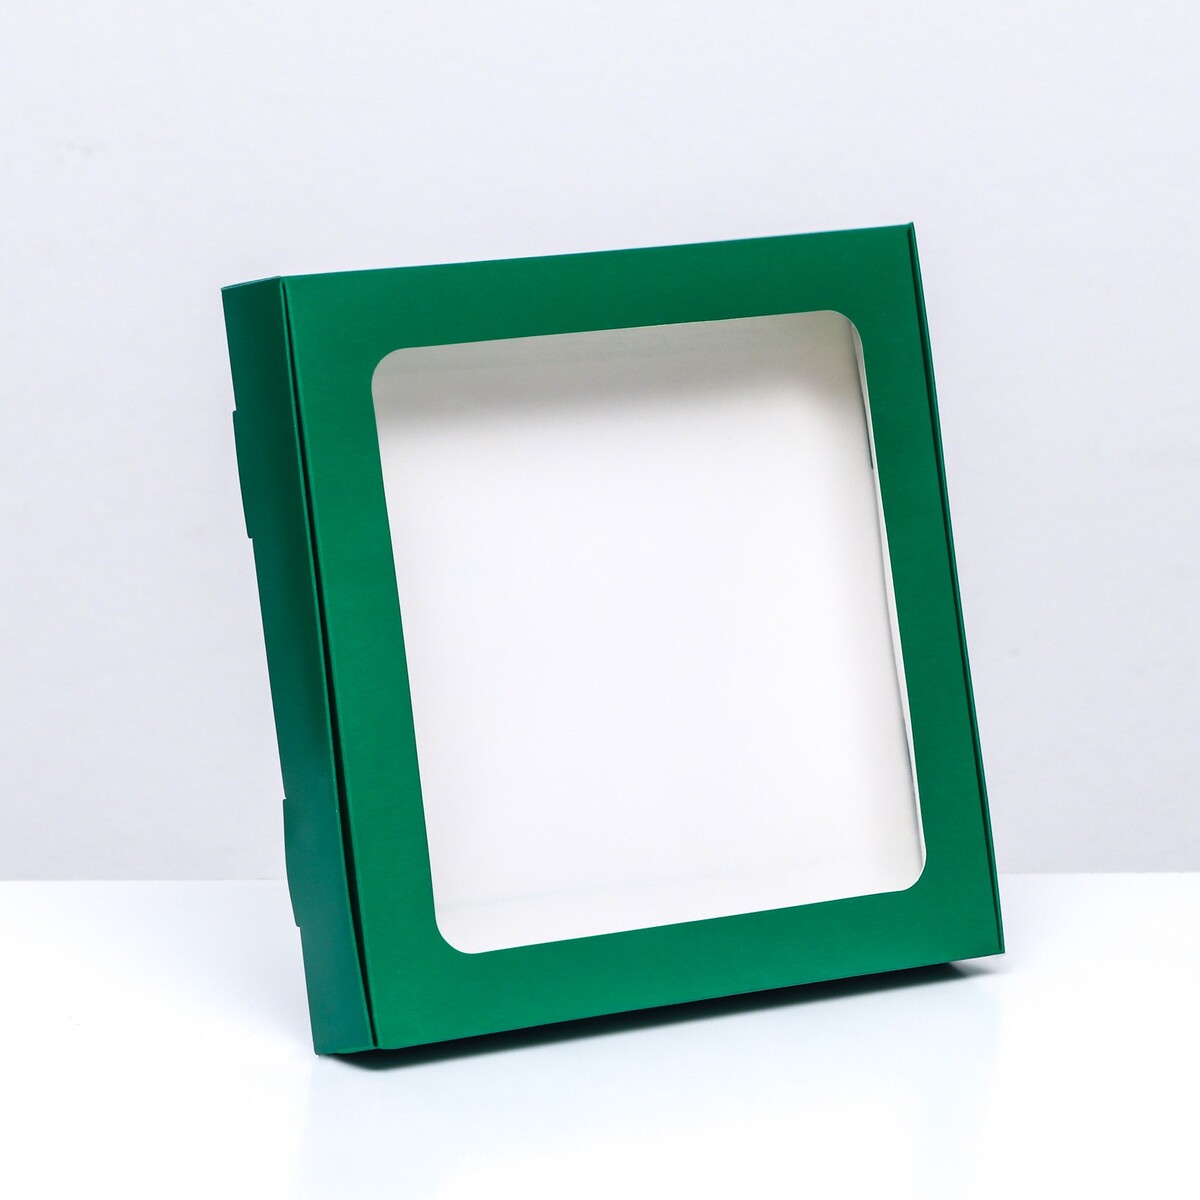 Коробка самосборная с окном, зеленый, 19 х 19 х 3 см коробка самосборная с окном серебрянная 16 х 16 х 3 см